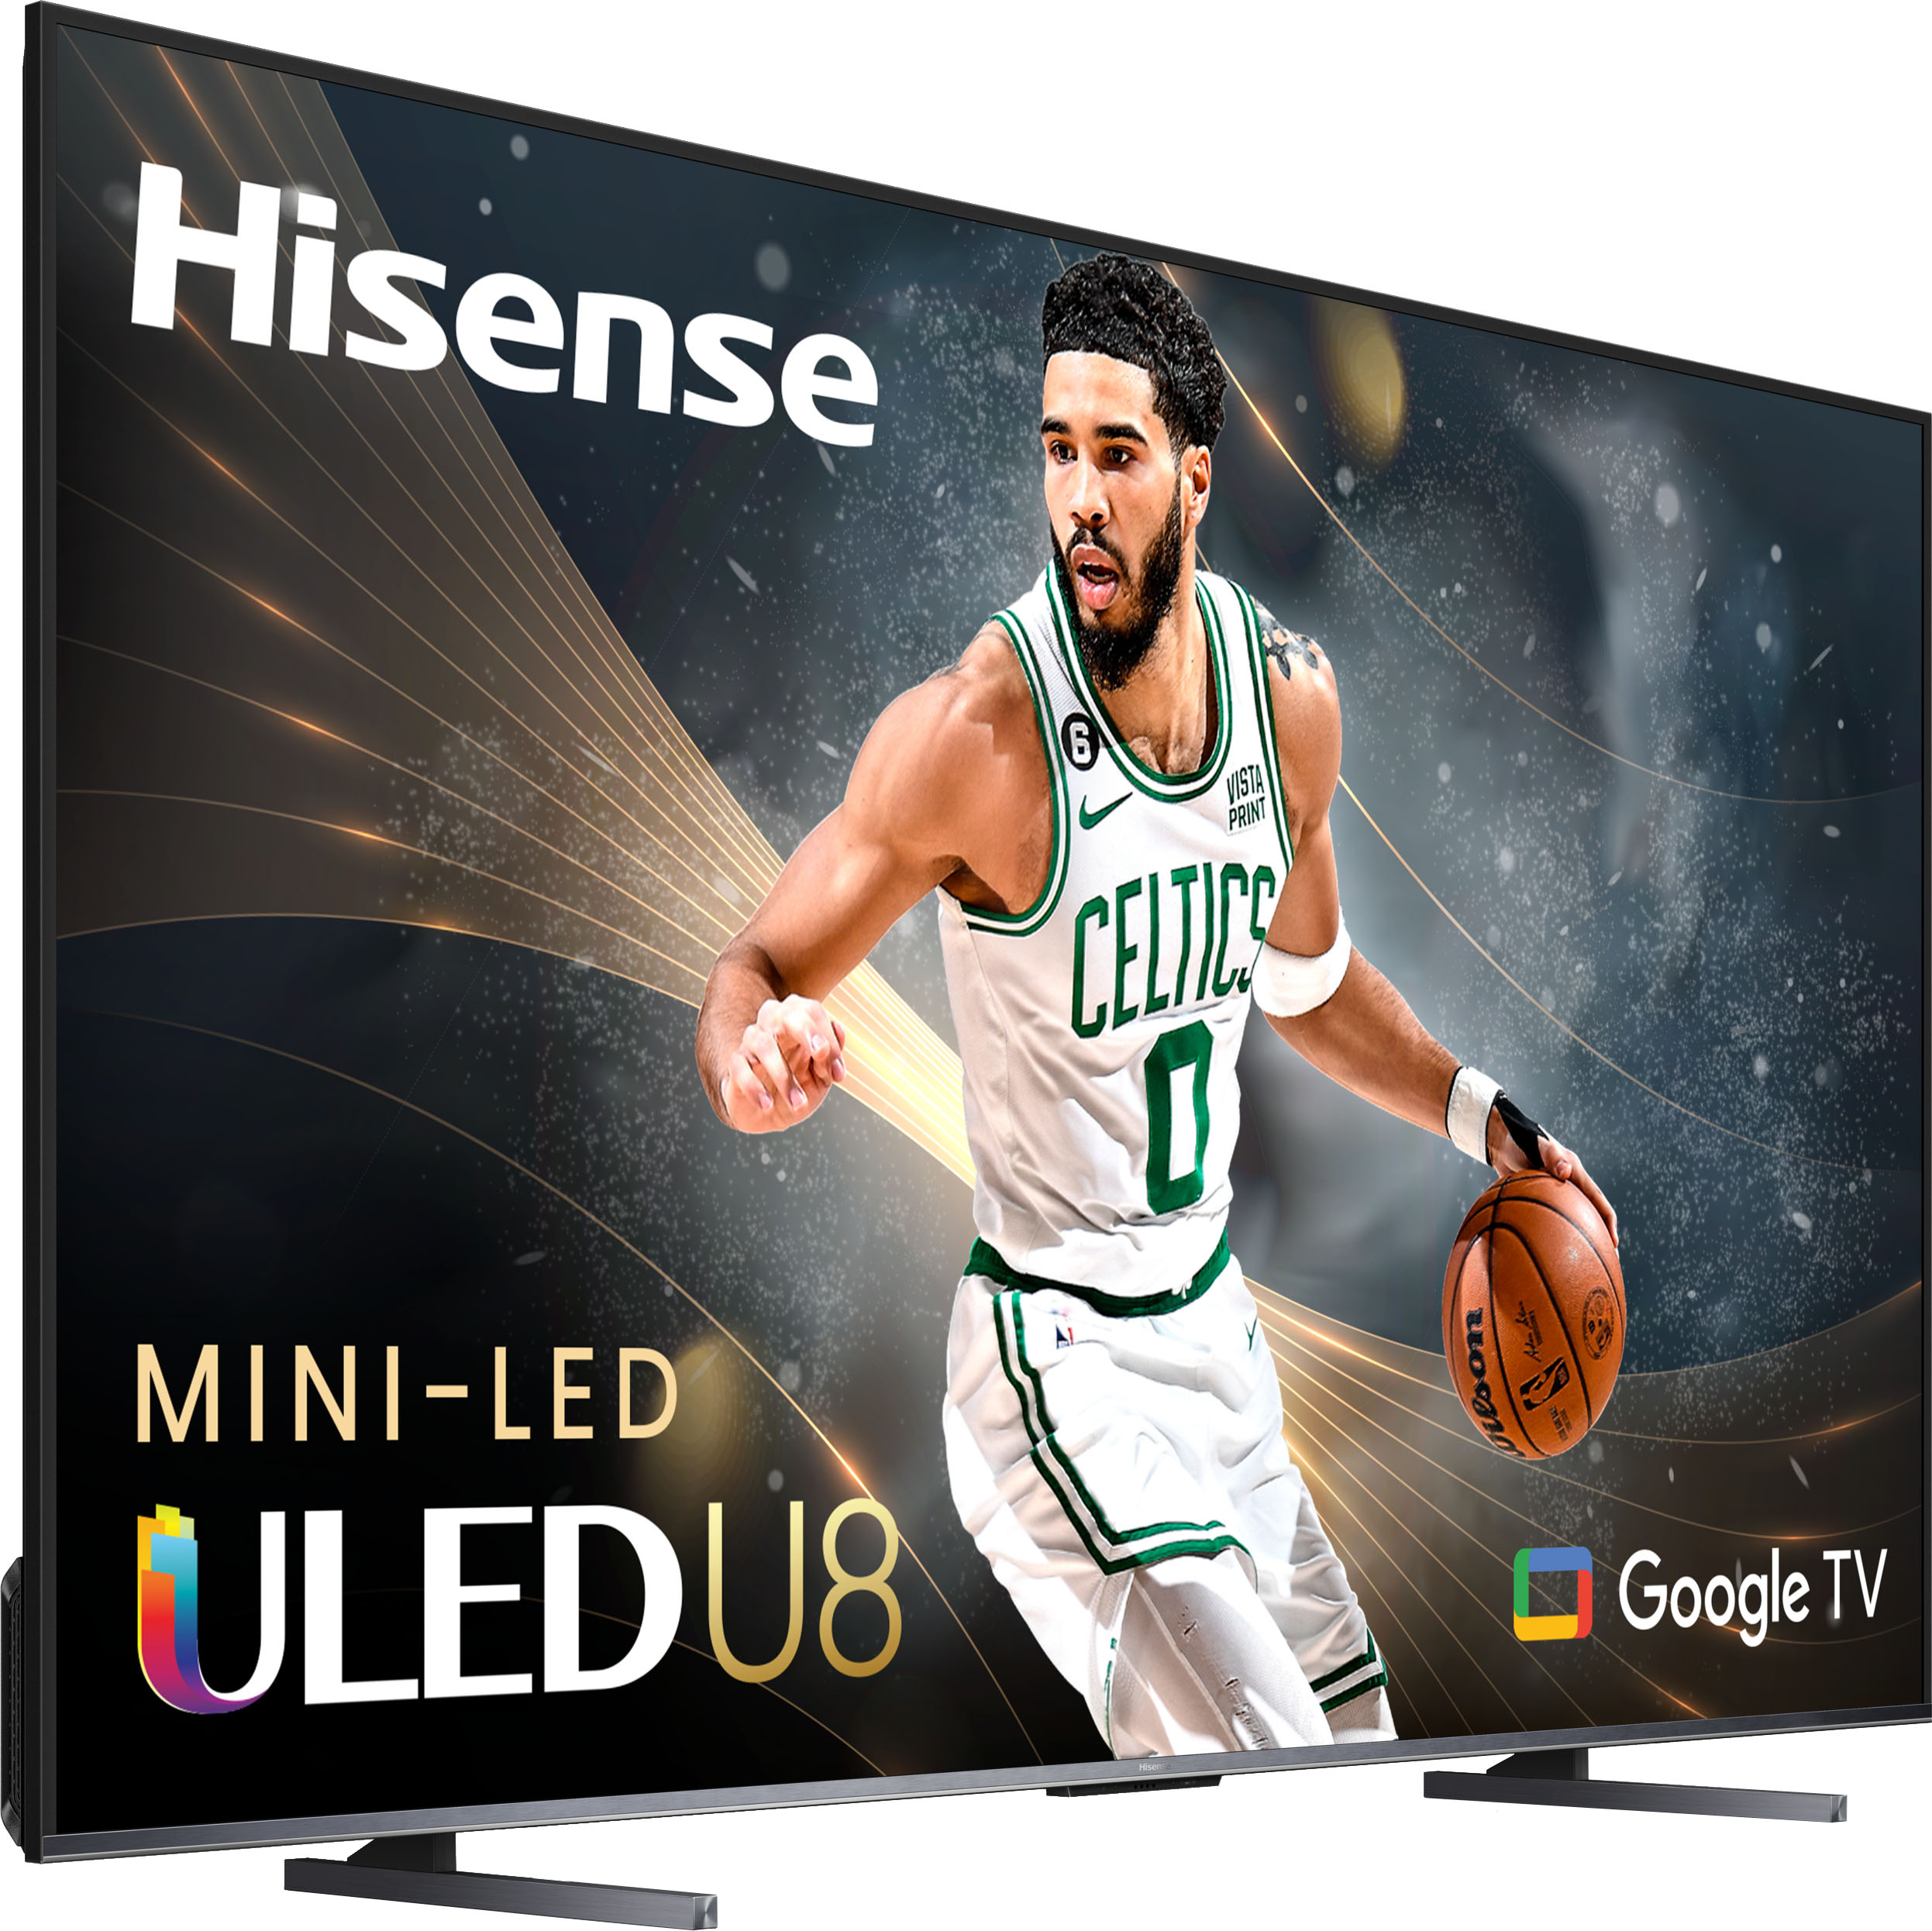 HISENSE MINI-LED ULED TV 100, GOOGLE TV